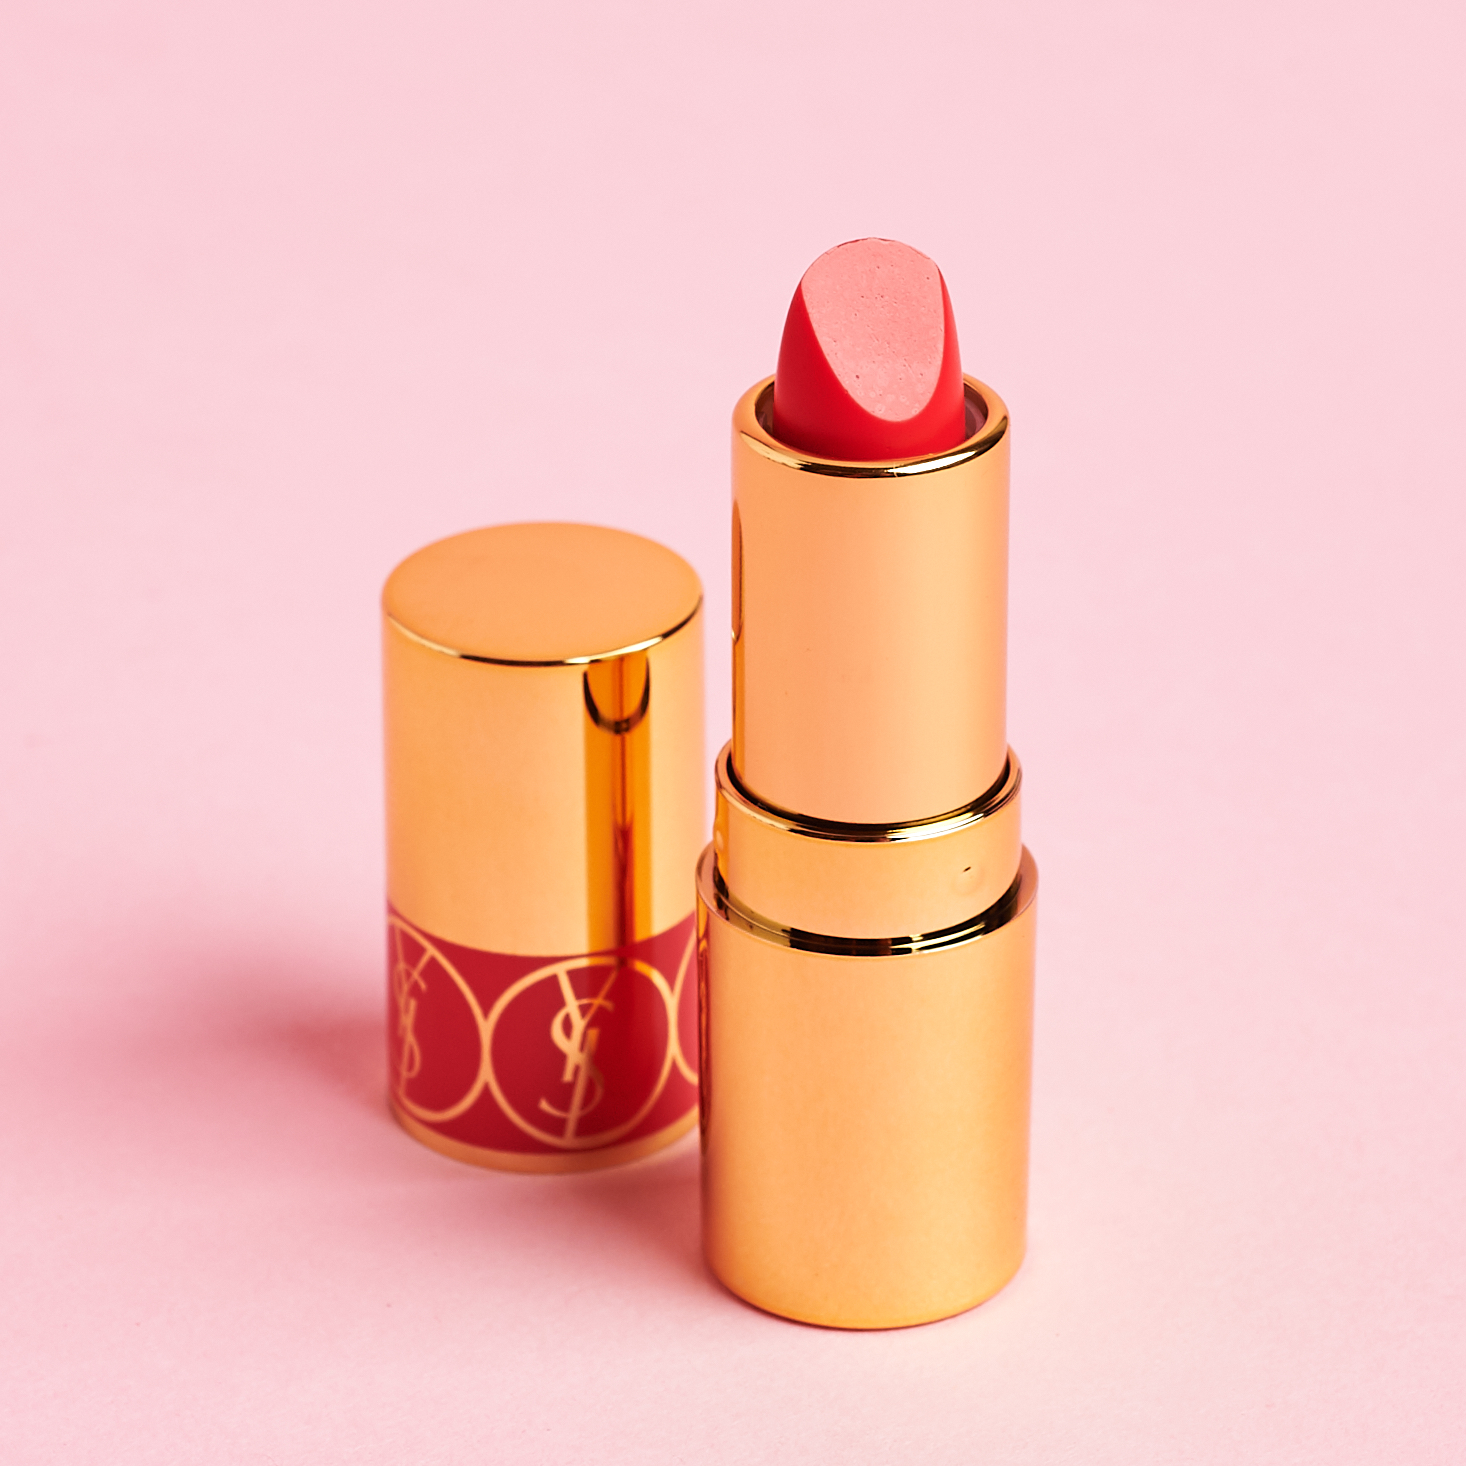 ves Saint Laurent Rouge Volupté Shine Oil-In-Stick Lipstick with lid off